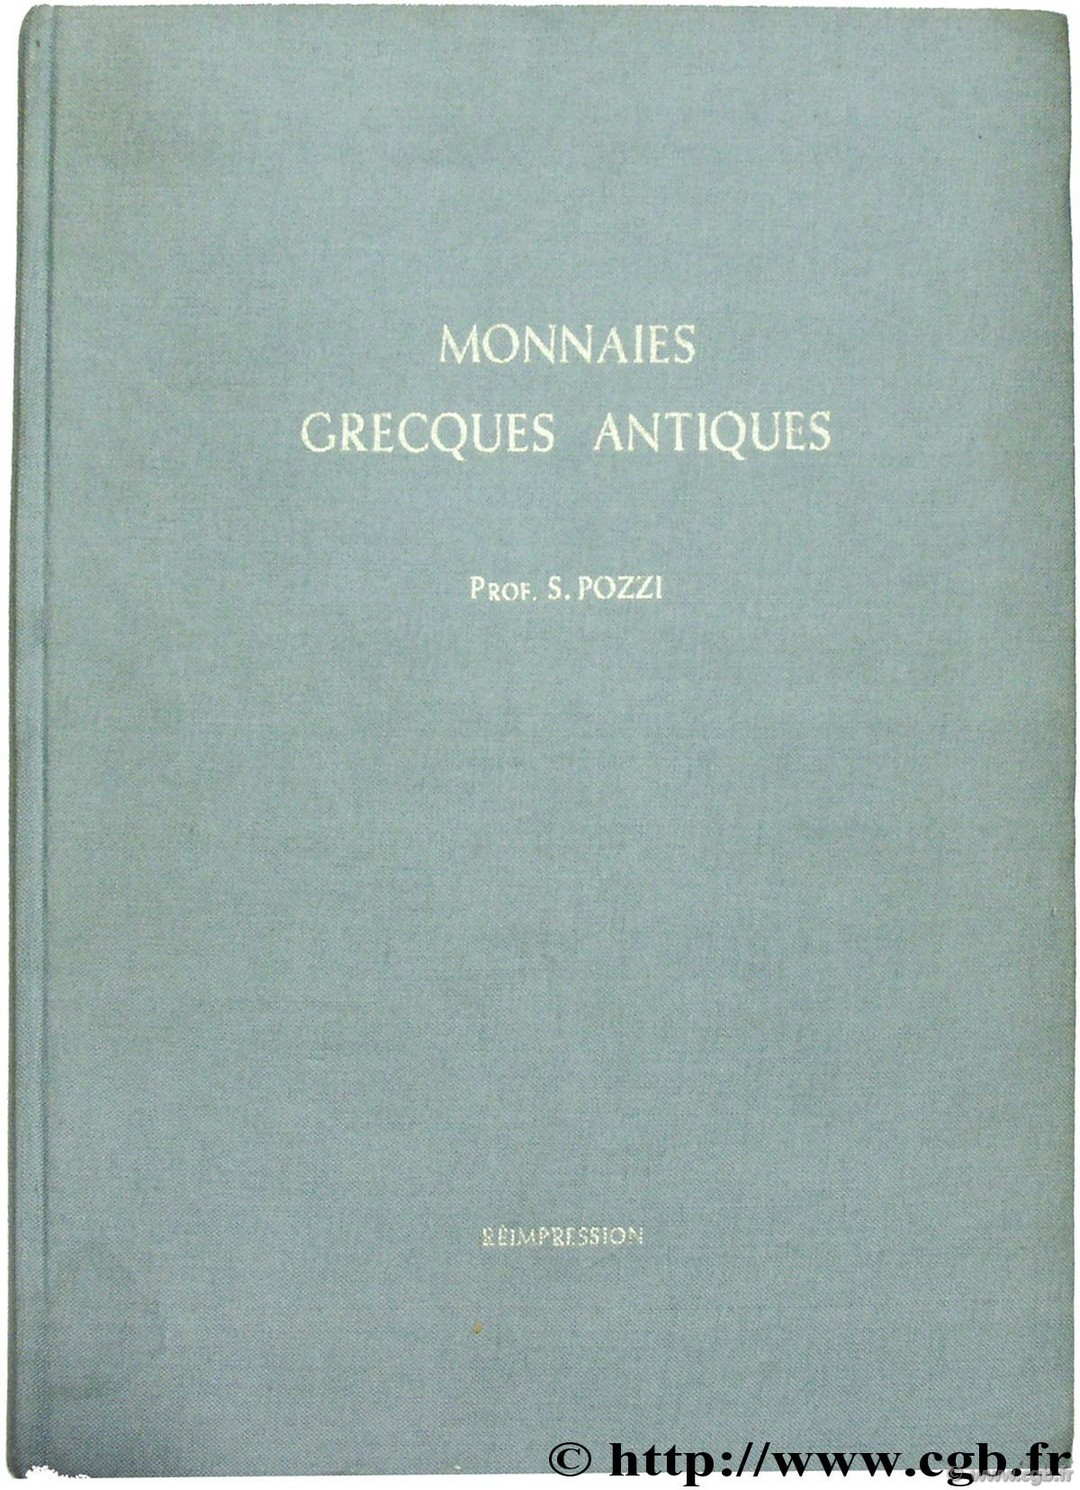 Catalogue des monnaies grecques antiques de l ancienne collection Pozzi 